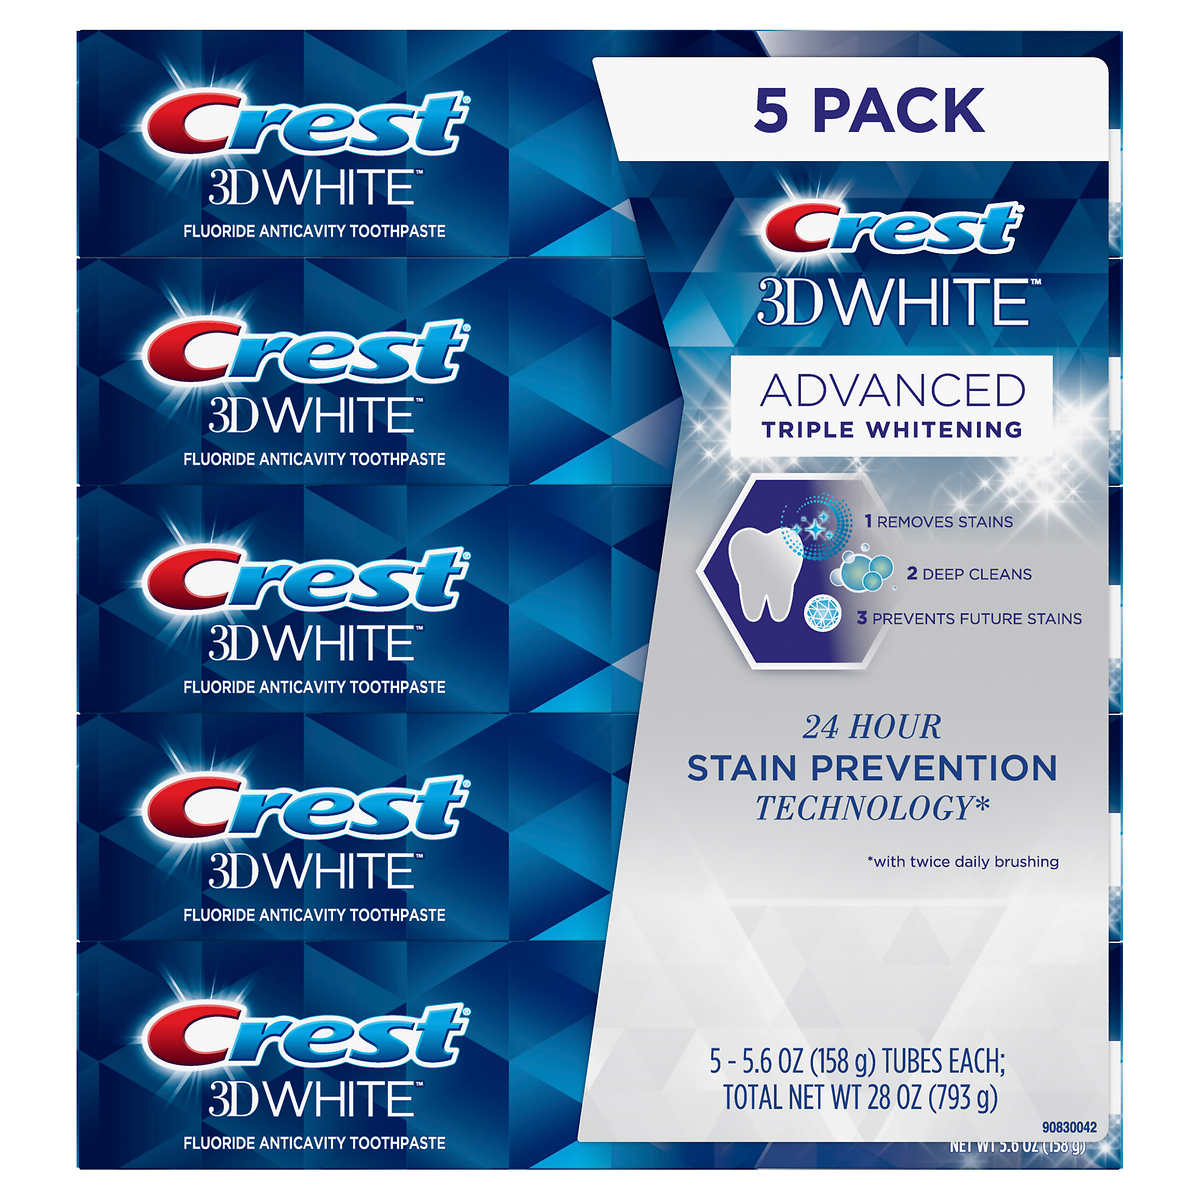 Crest 3D White avanceret triple Whitening tandpasta 5-pakke
Crest er et af amerikanernes egne mærkevarer. 

Crest 3D White Advanced Triple Whitening Toothpaste 5-pack